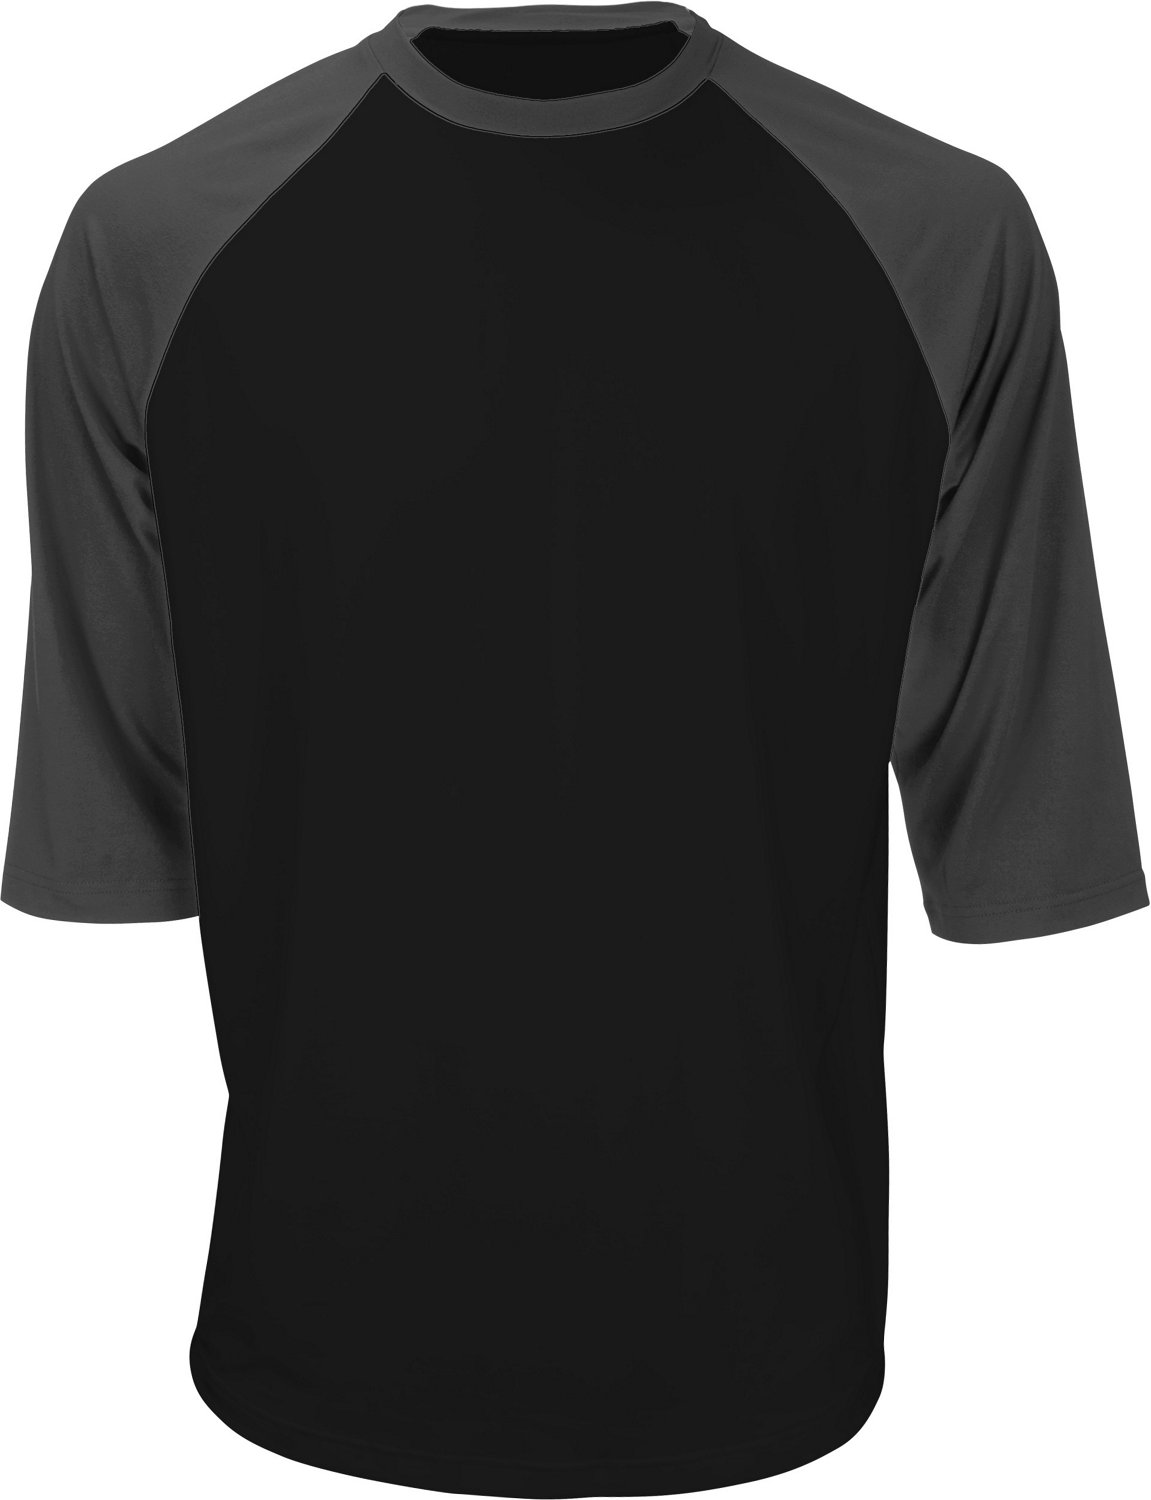 Marucci Boys' 3/4 Length Performance T-shirt | Academy